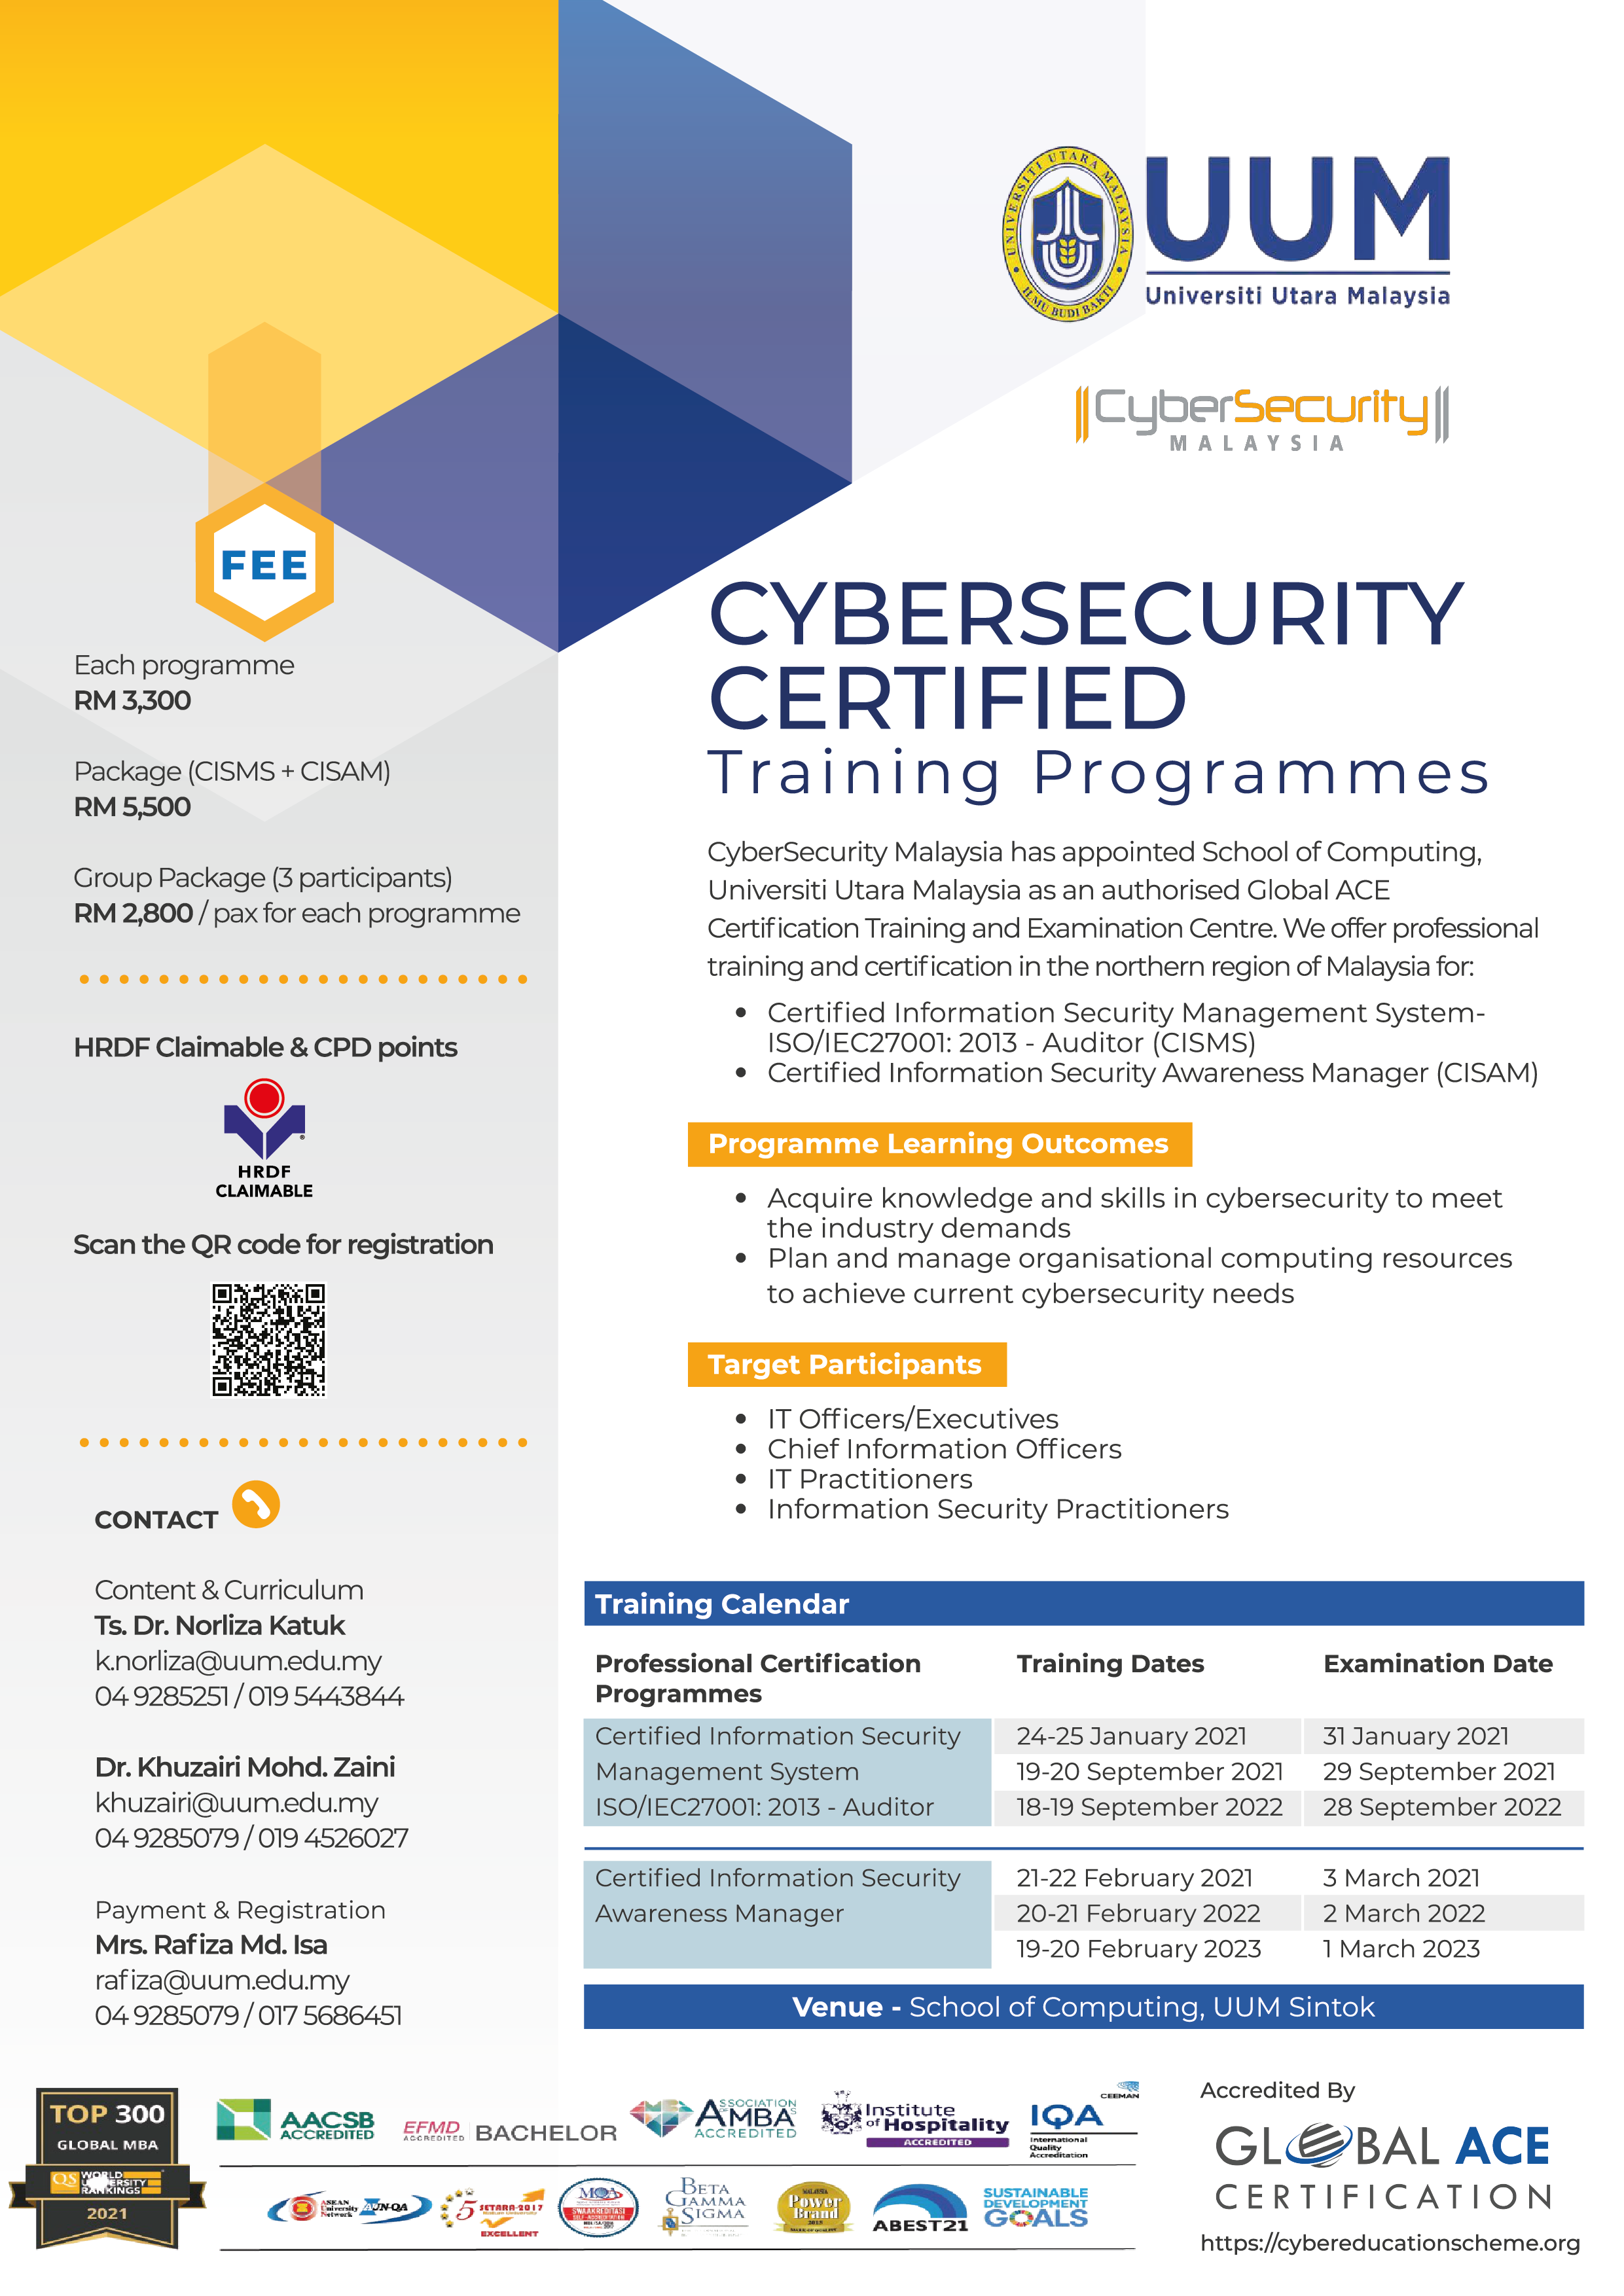 CybersecurityCertifiedTraining 01 fieza 06122020